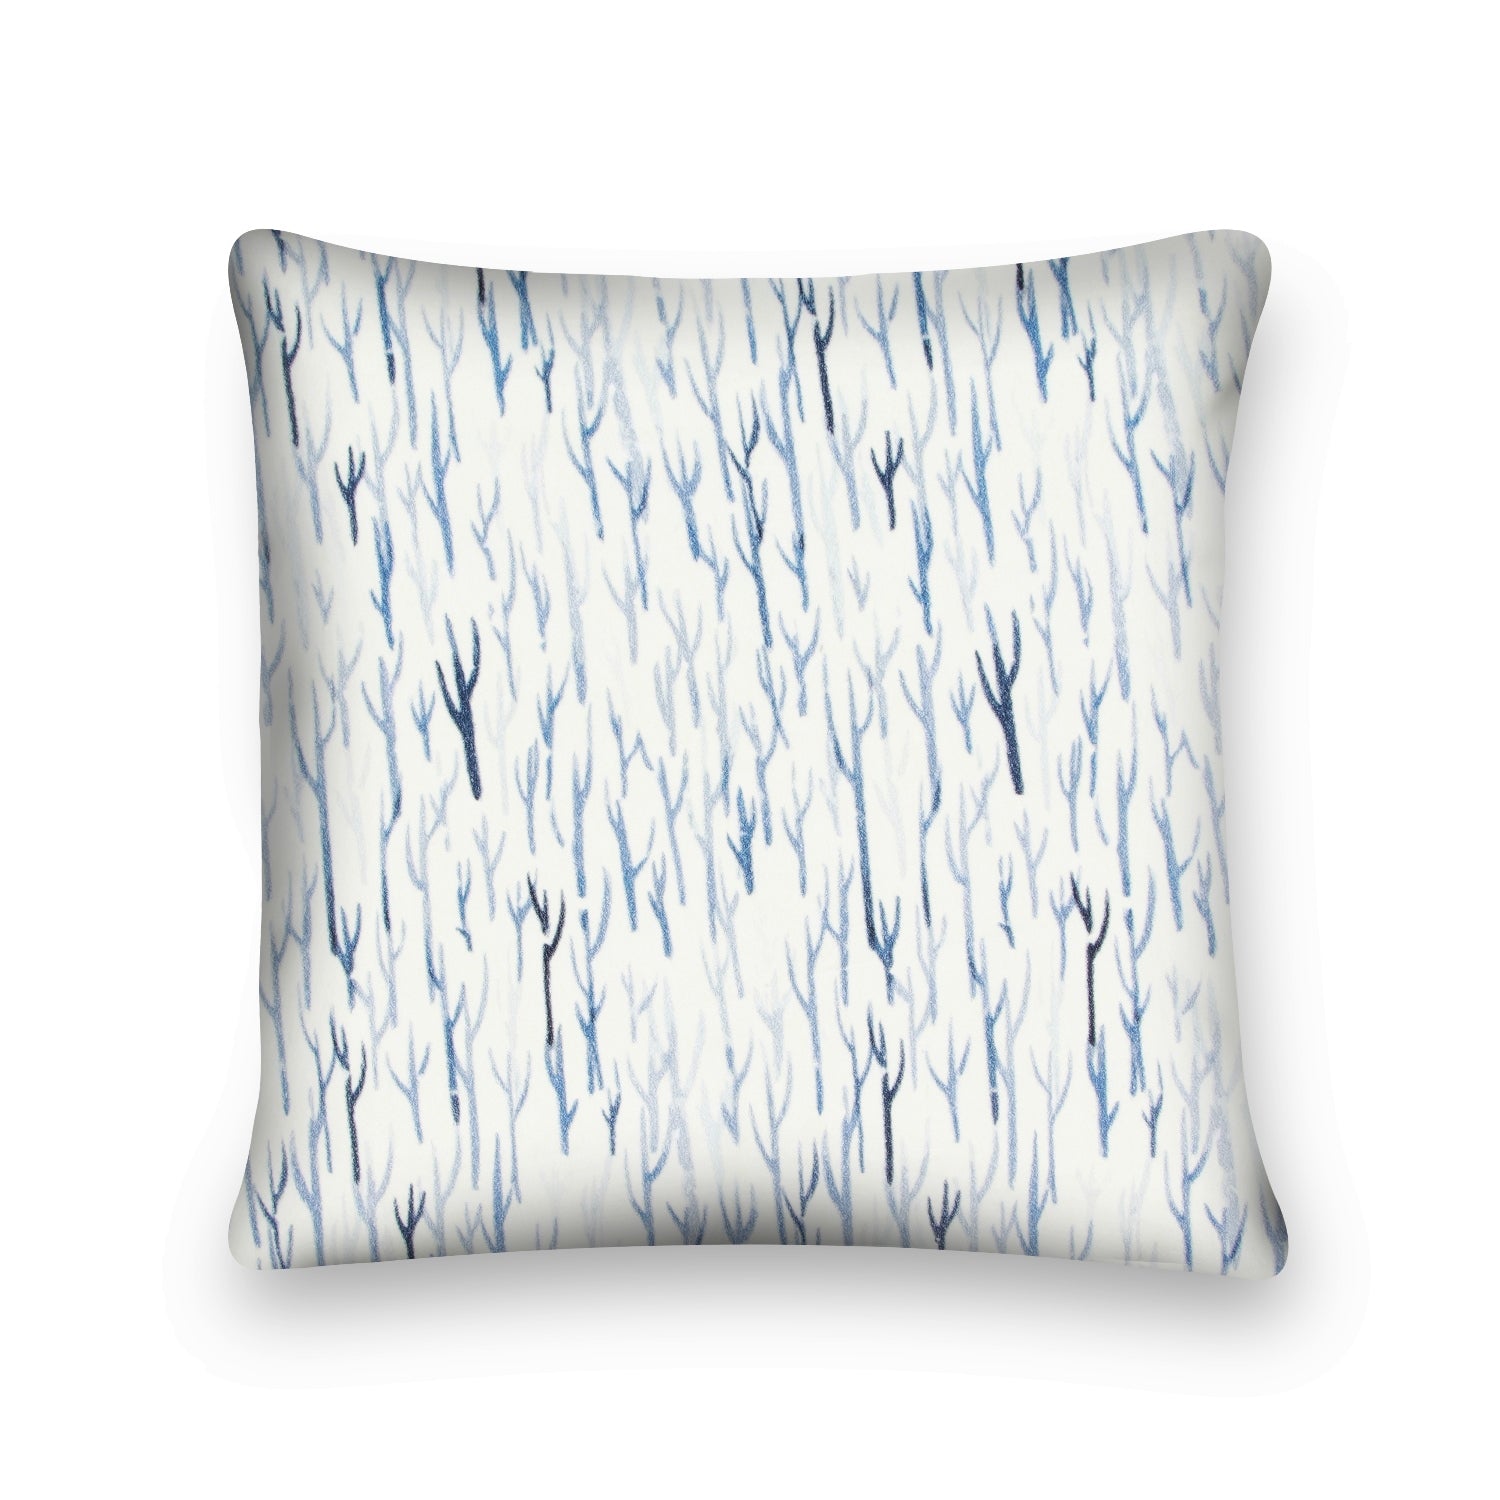 'Seaside Reverie' 100% Cotton Velvet Cushion Cover